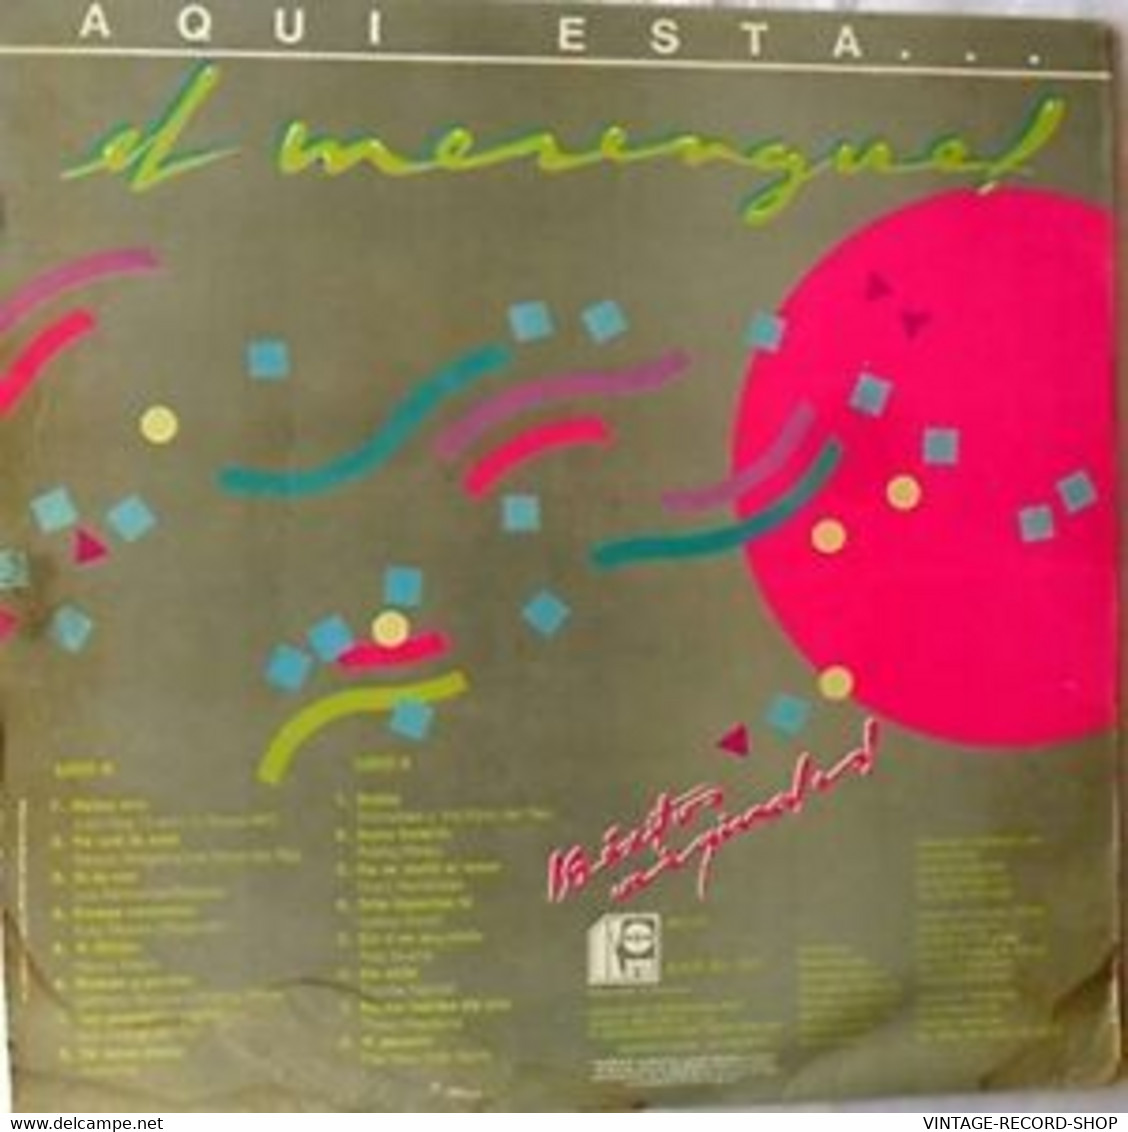 AQUI ESTA EL MERENGUE-LOS 16 EXITOS ORIGINALES-KAREN VENEZUELA 1995 VG++ - Otros - Canción Española